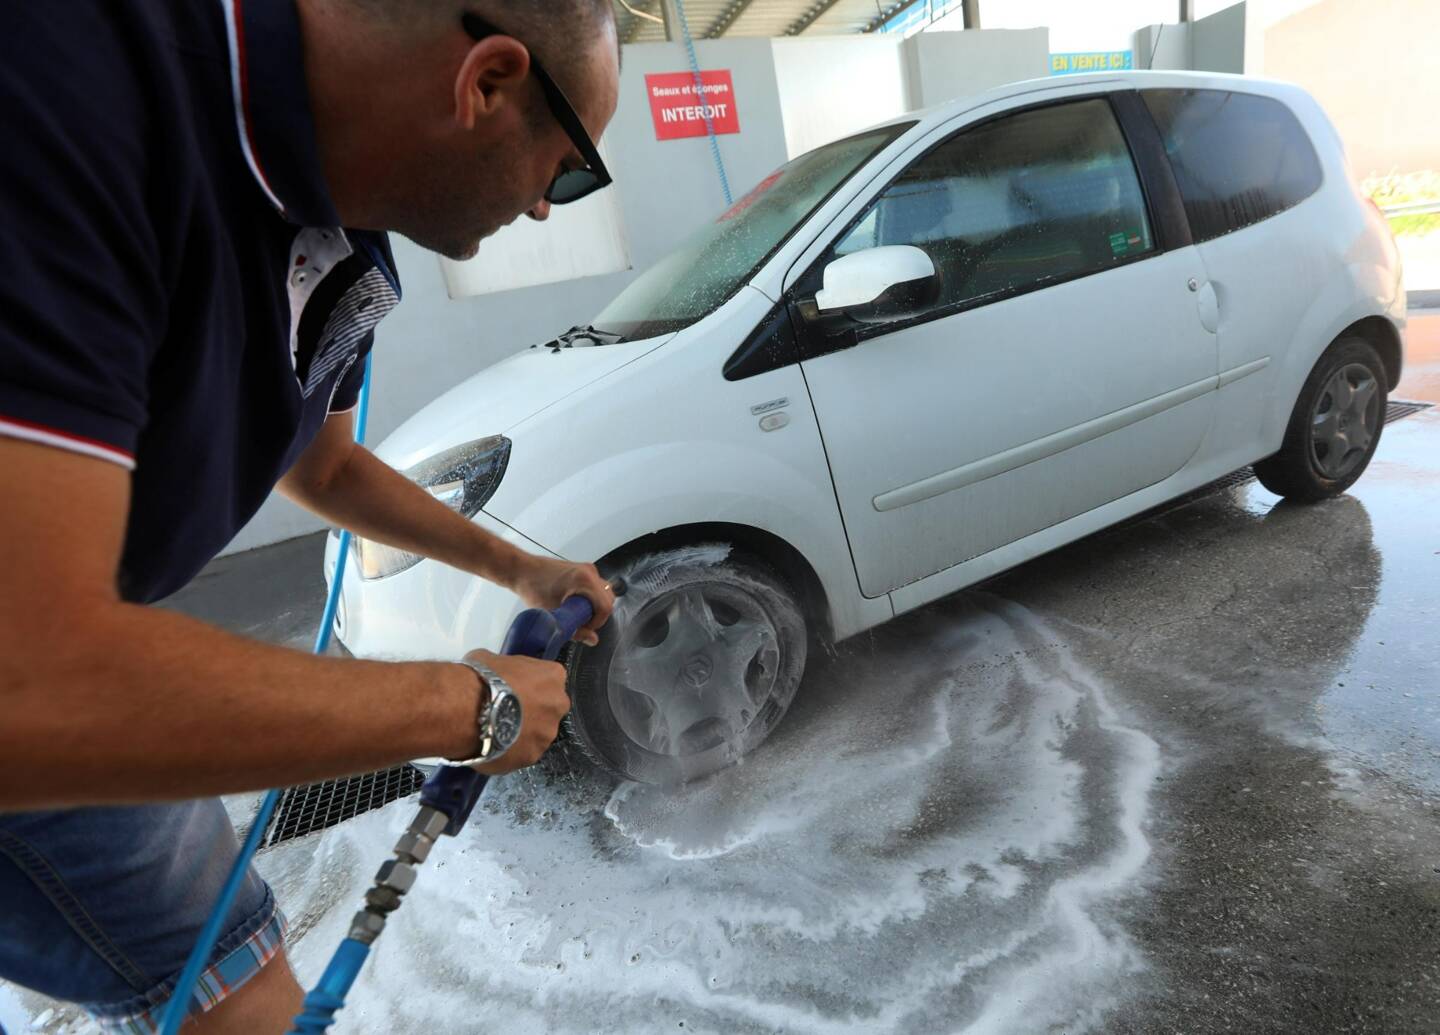 La loi française interdit de laver sa voiture devant chez soi: il faut la nettoyer en station de lavage ou la confier à un professionnel.